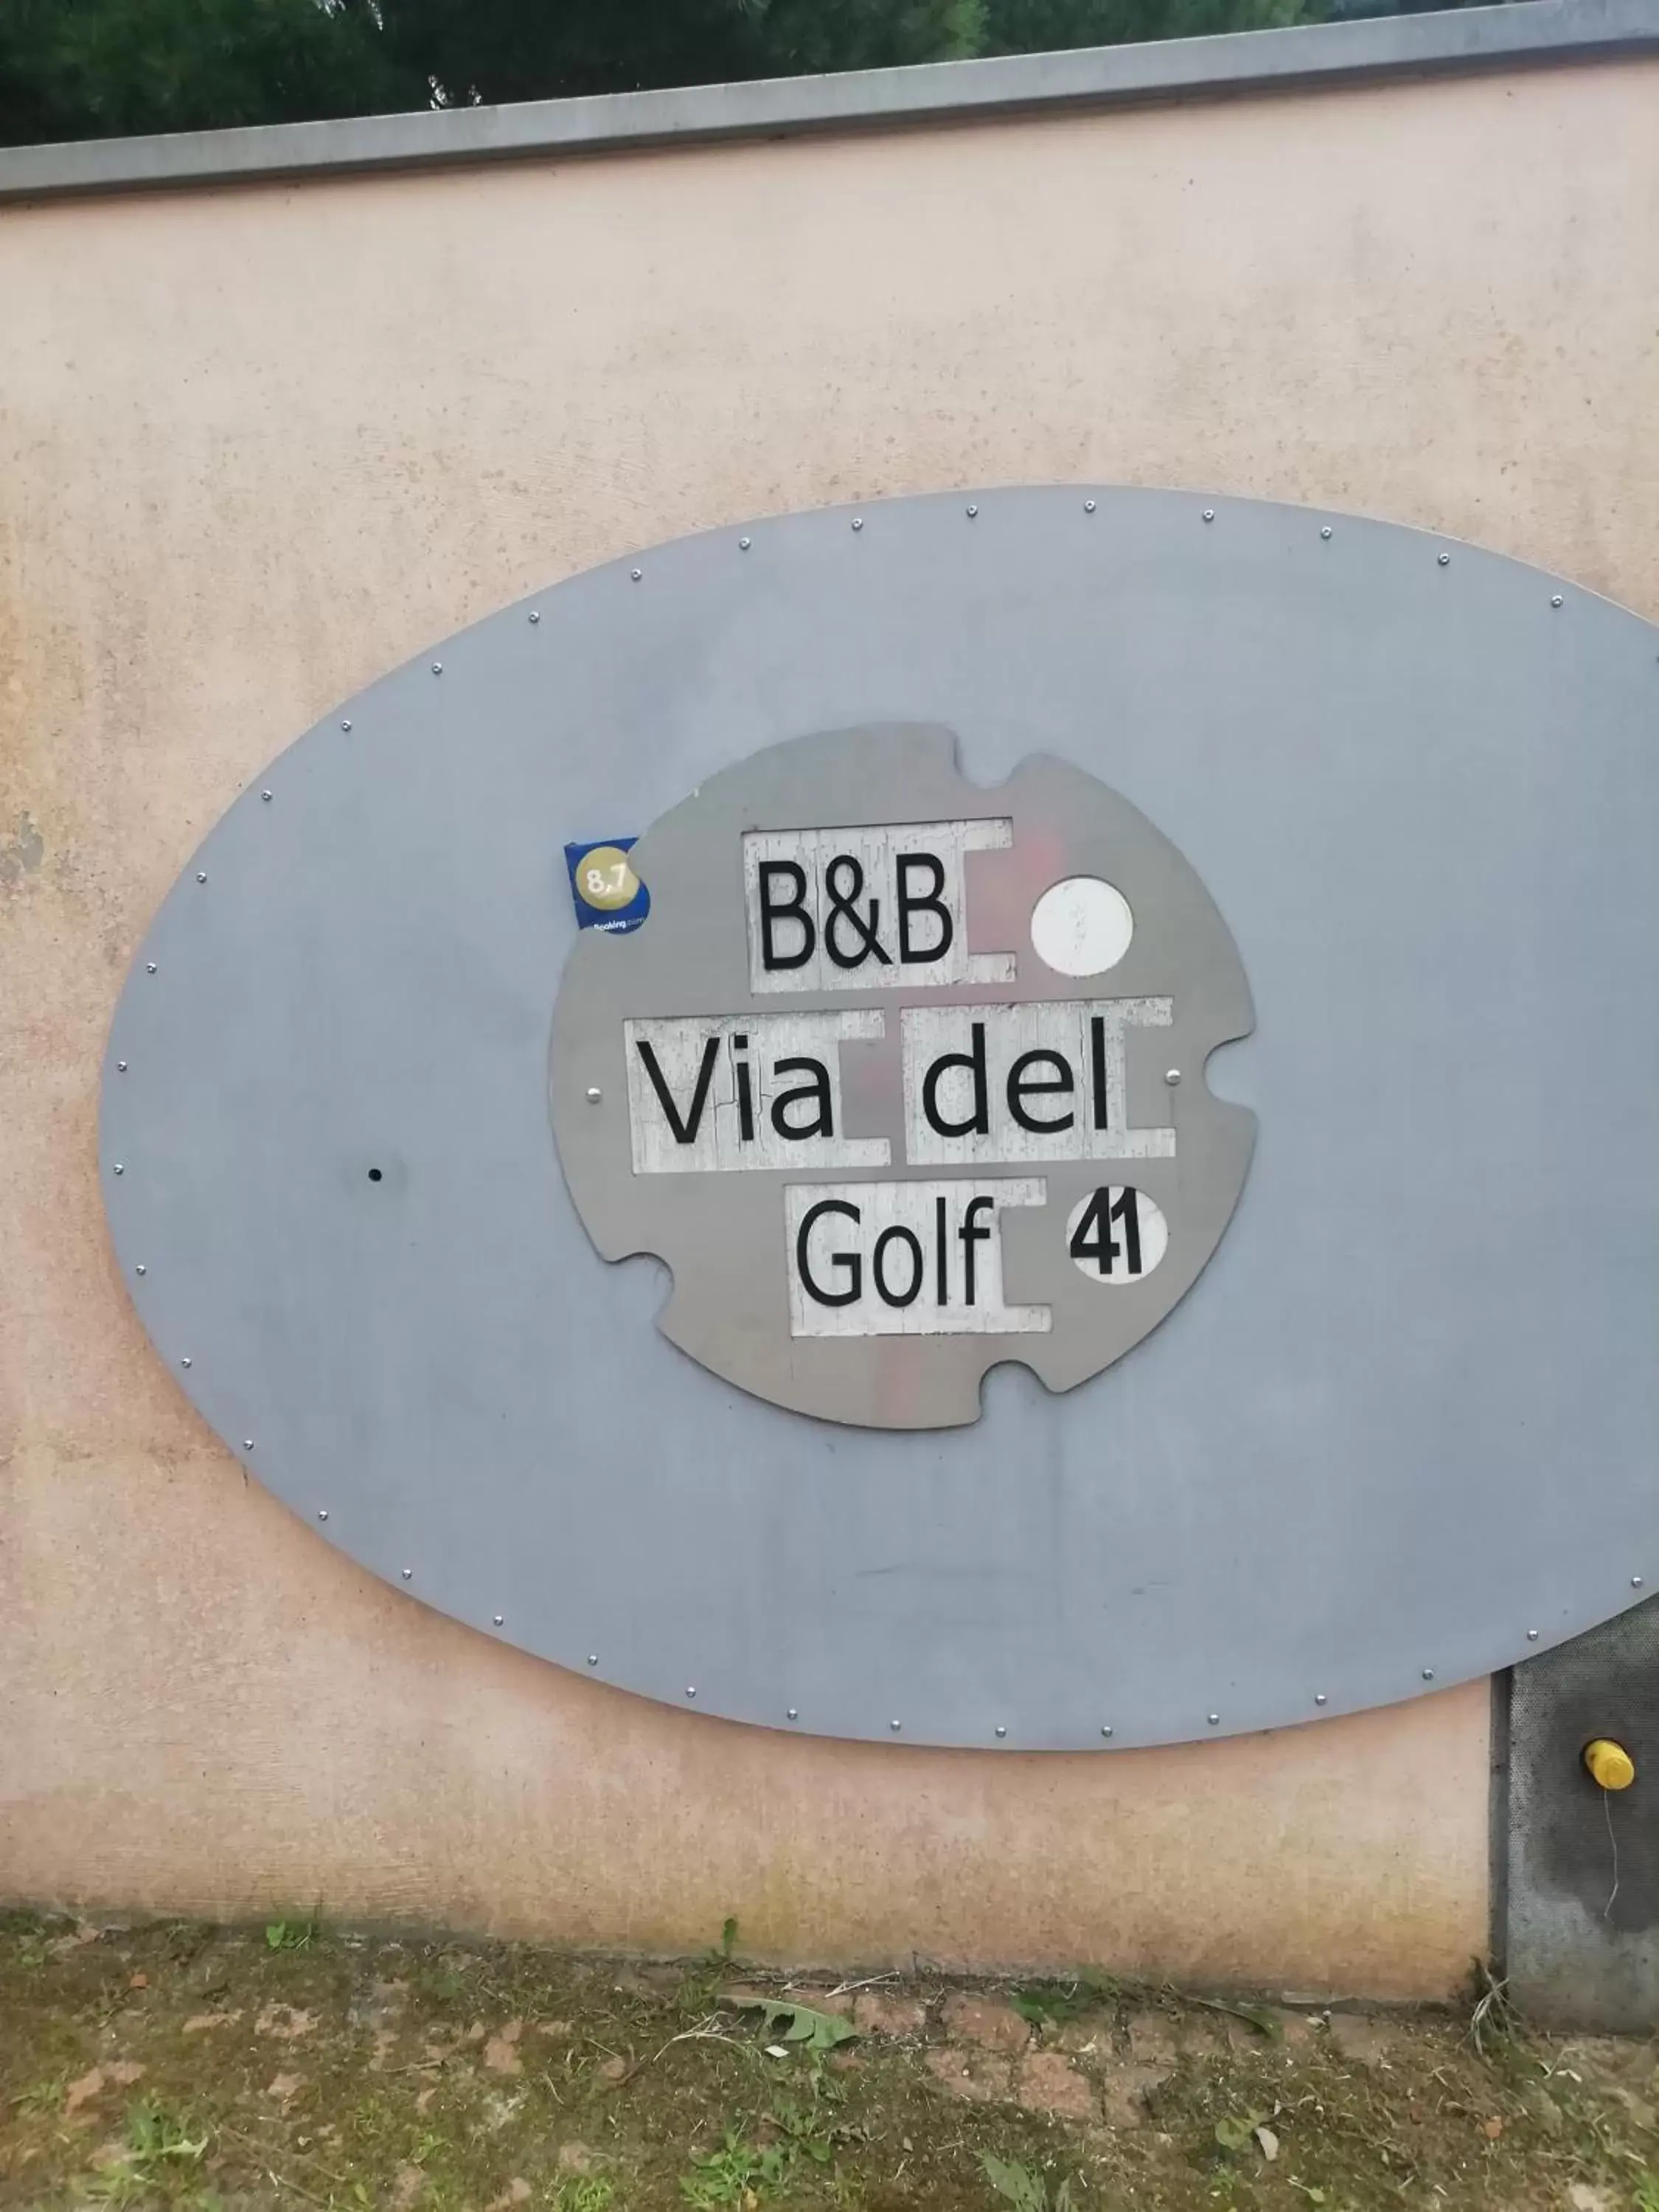 B&B Via Del Golf 41